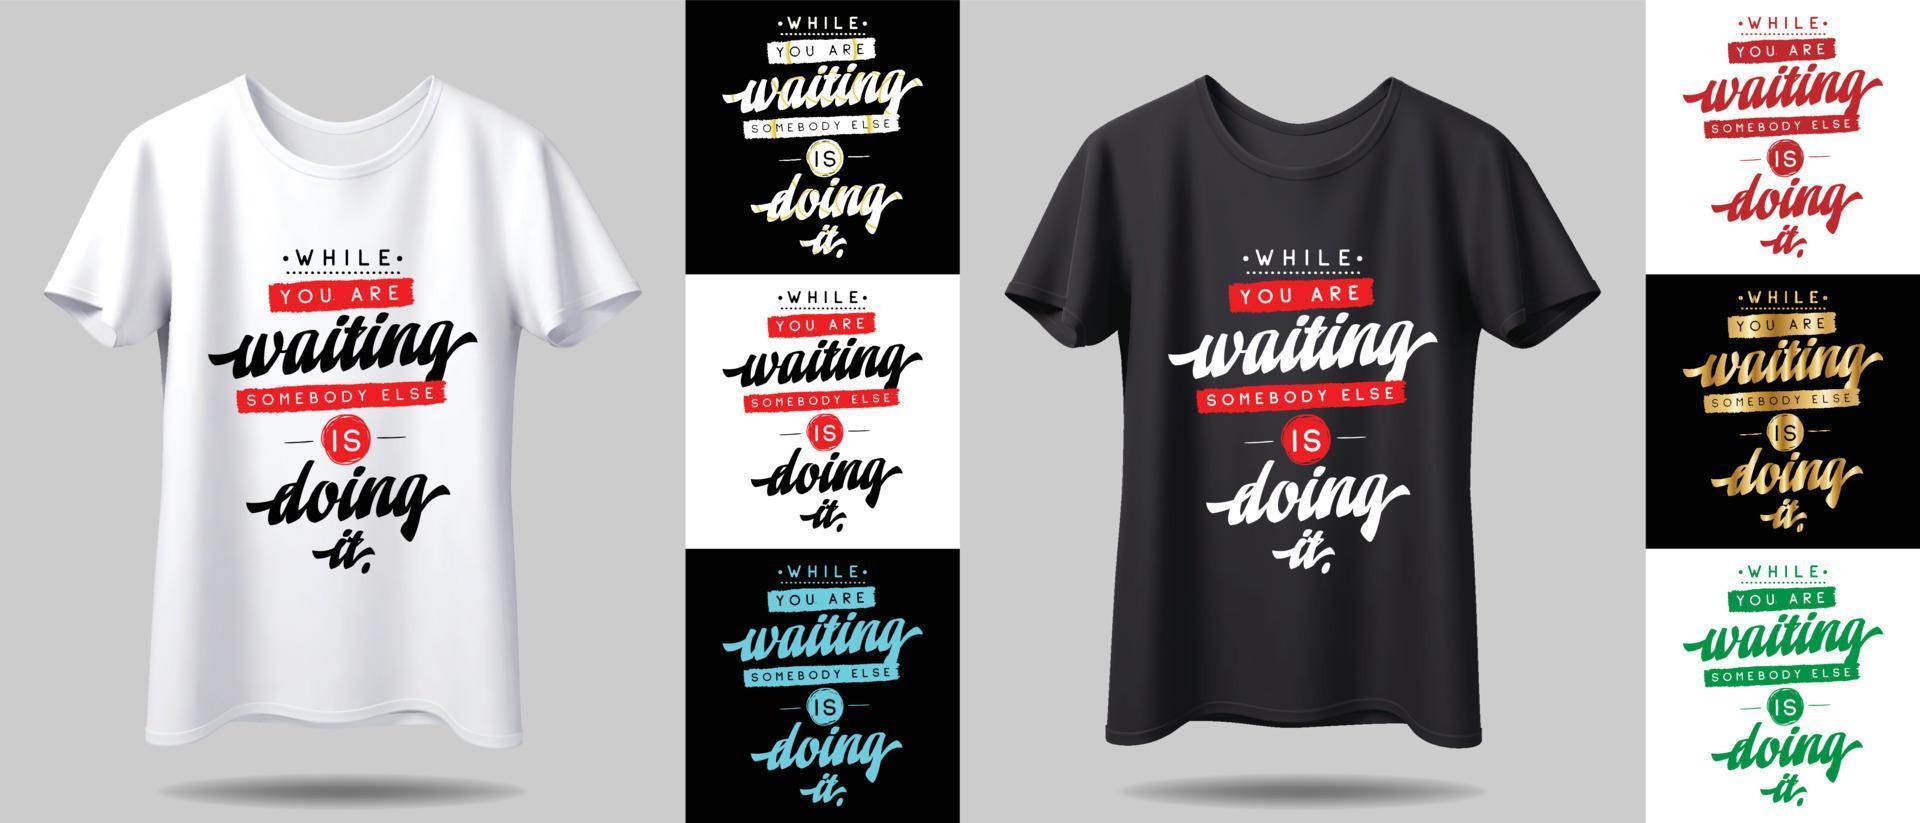 t-shirt design mockup. ny svartvit typografi t-shirt design med mockup i annan färg. vektor